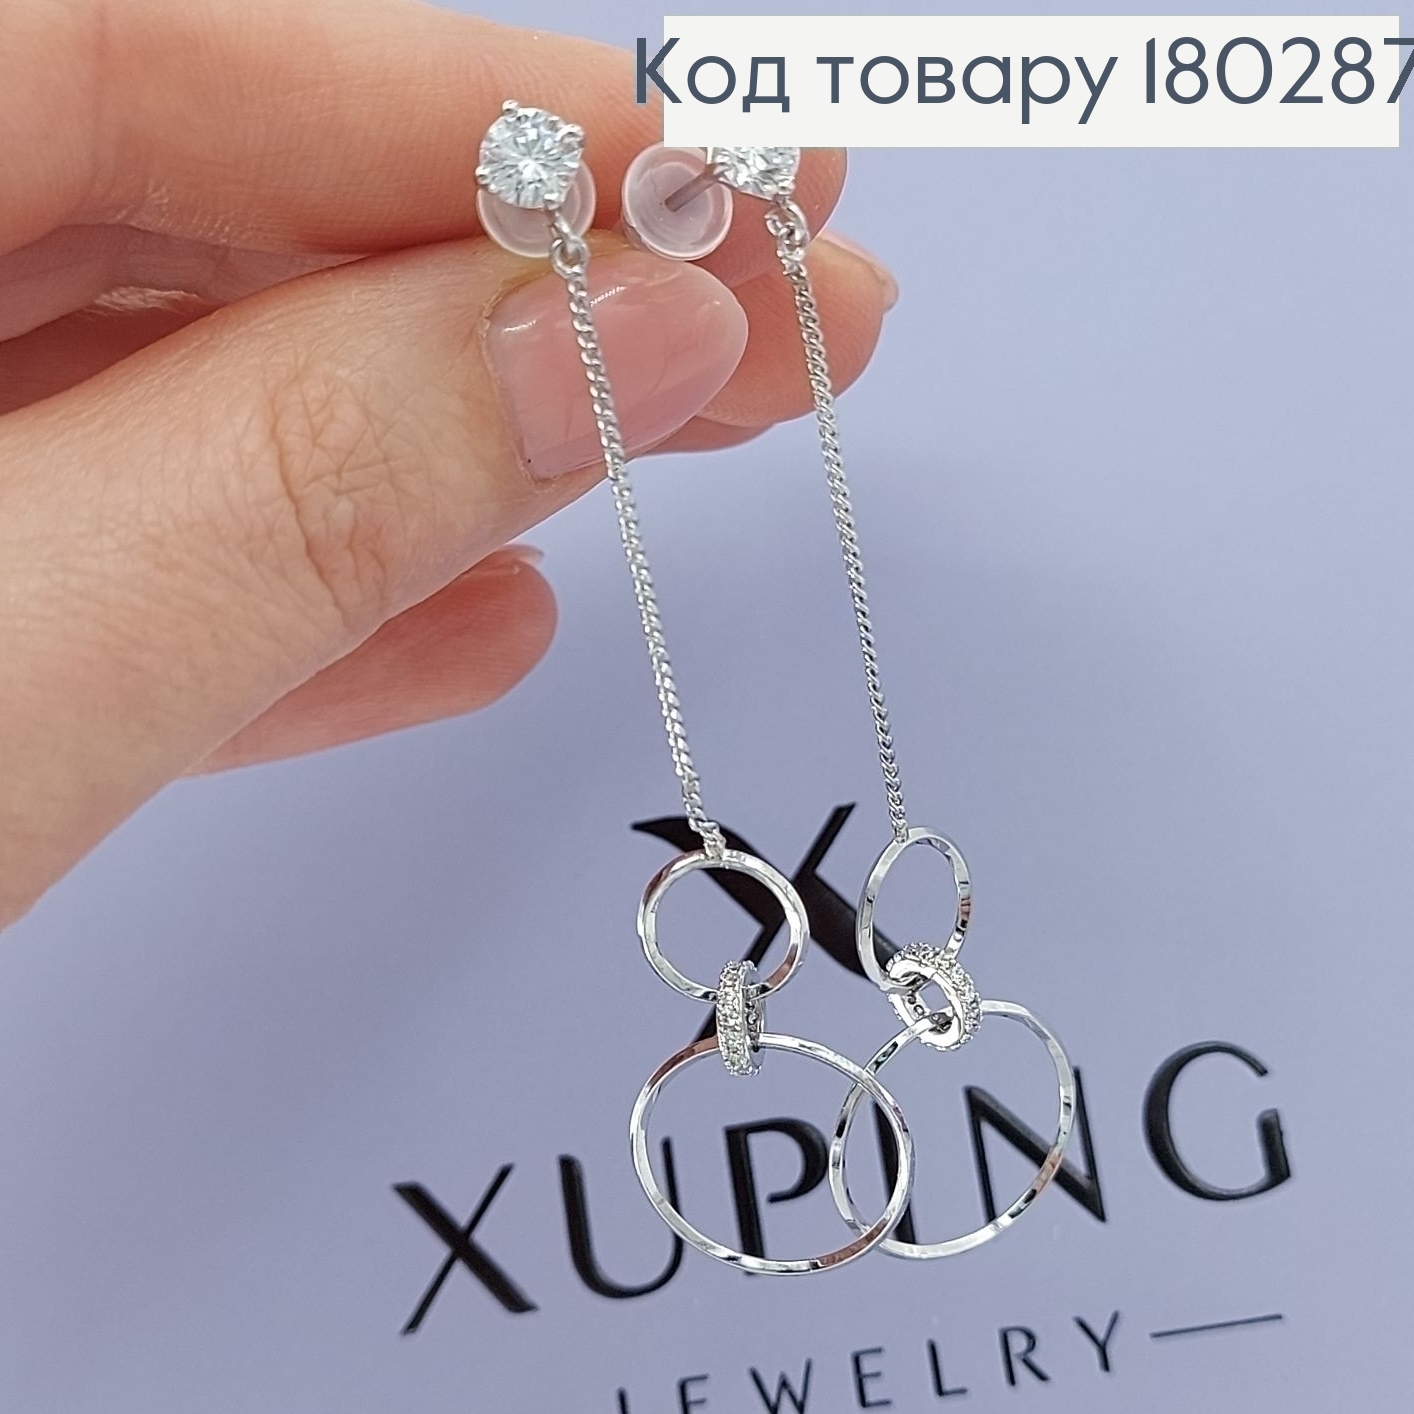 Сережки   гвіздки підвіски кольца  з камнями родіроване  медзолото Xuping 180287 фото 2